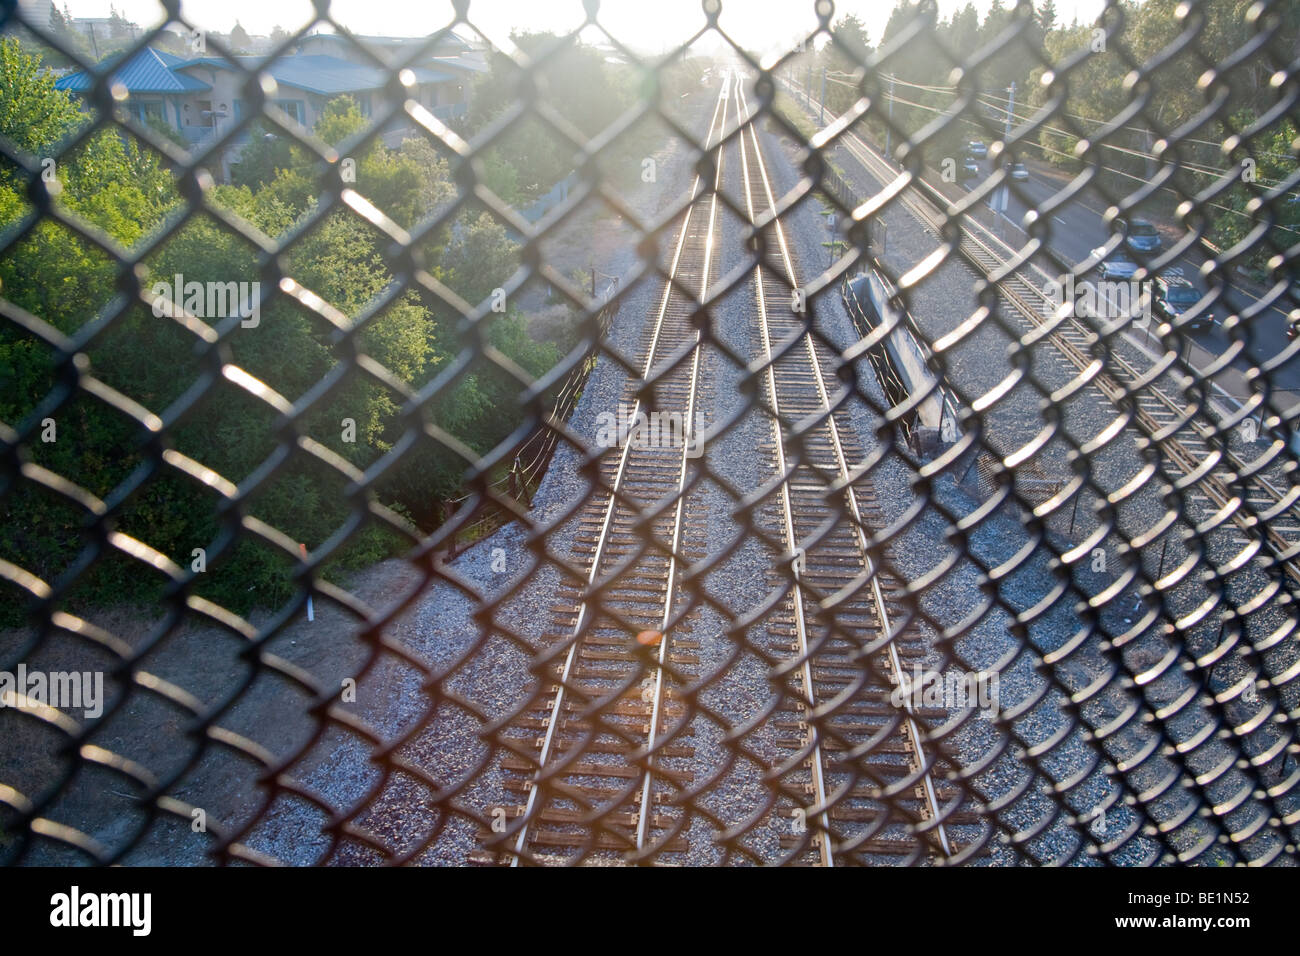 Caltrain Schienen von einer Fußgängerbrücke betrachtet. Der Drahtzaun ist für die Sicherheit. Mountain View, Kalifornien, USA Stockfoto